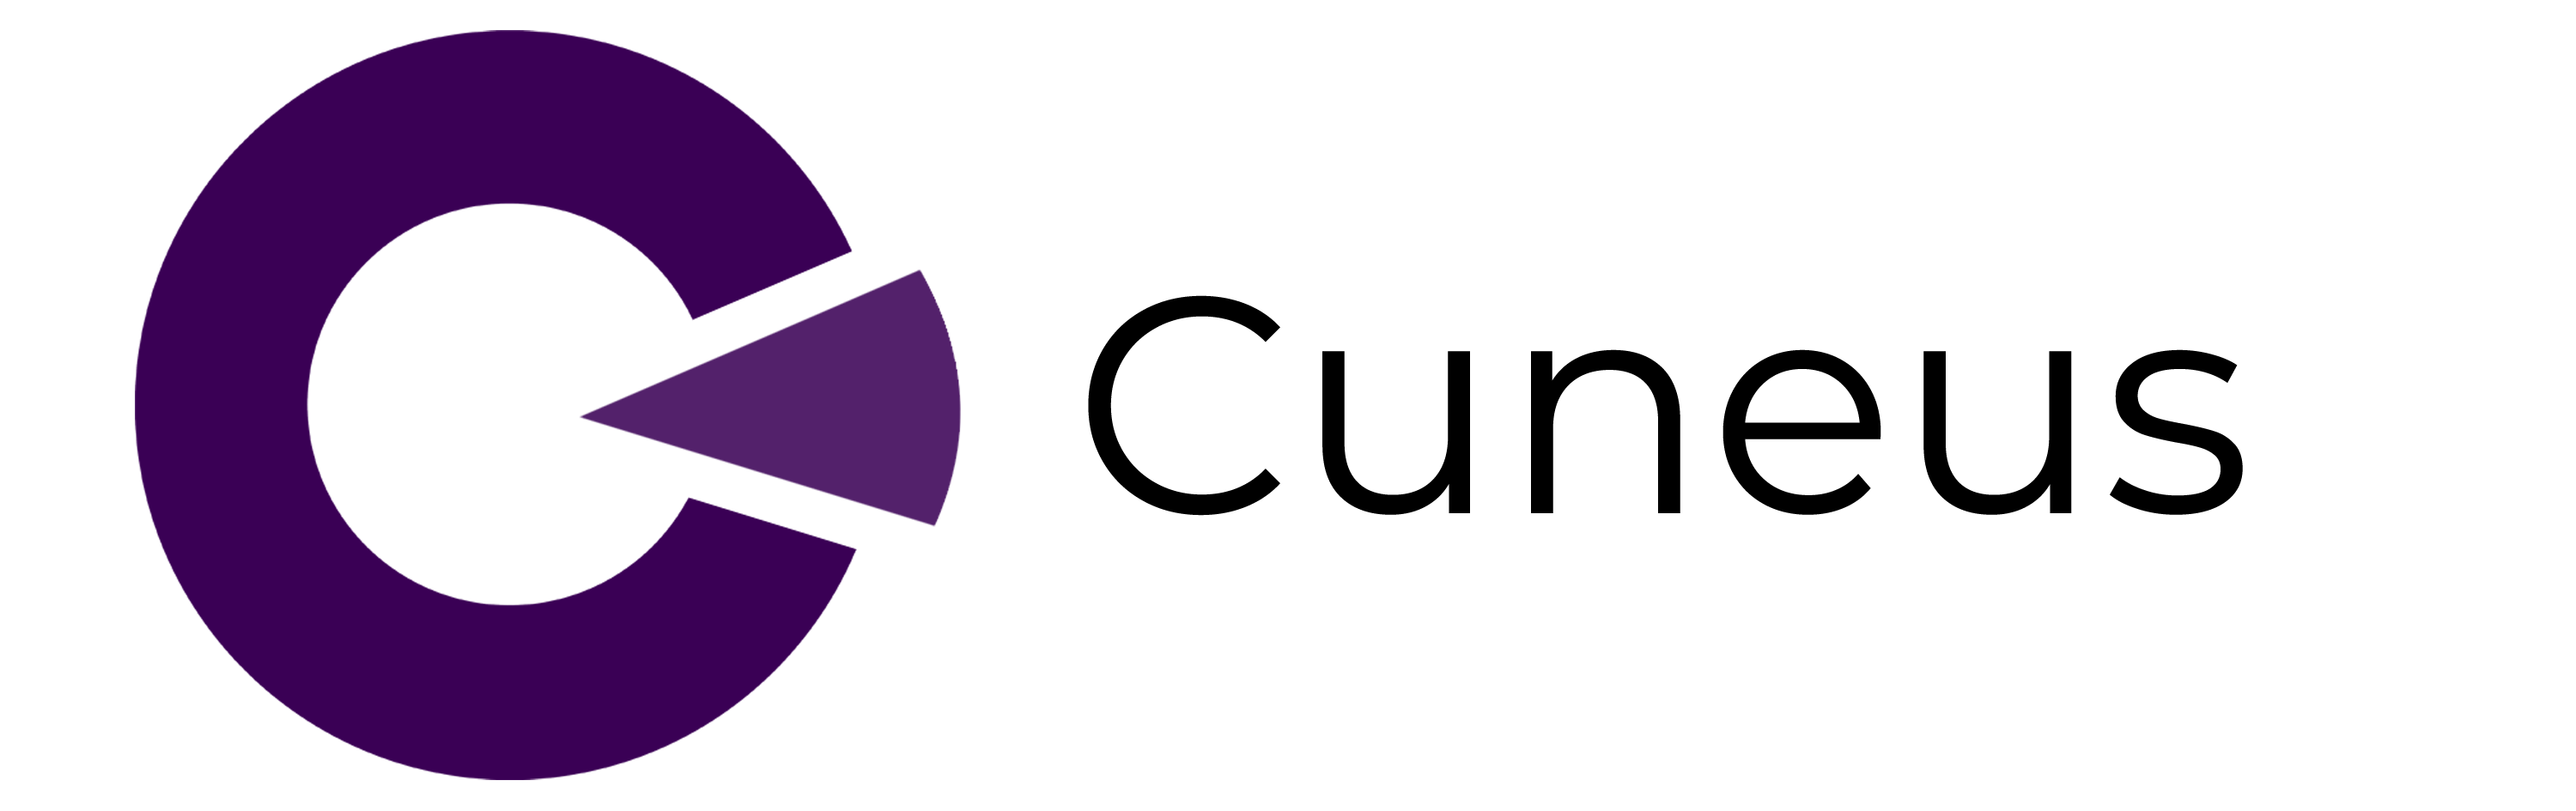 cuneus logo word (transparent).png